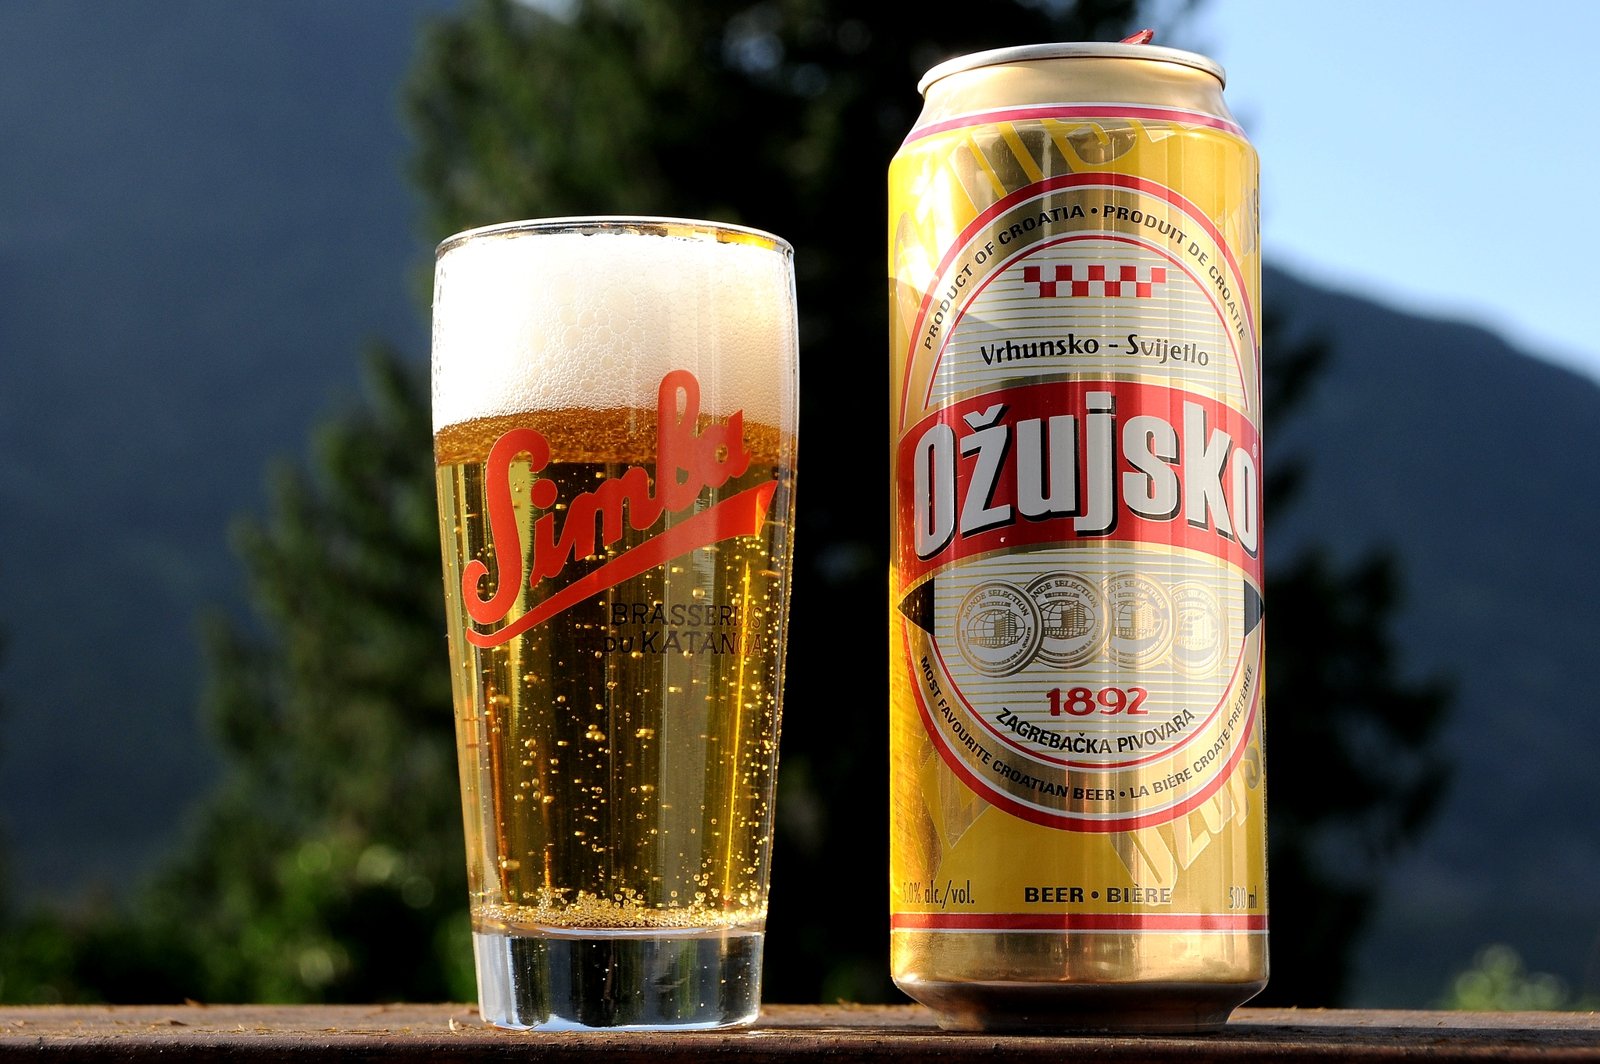 How to try Ožujsko beer in Zagreb